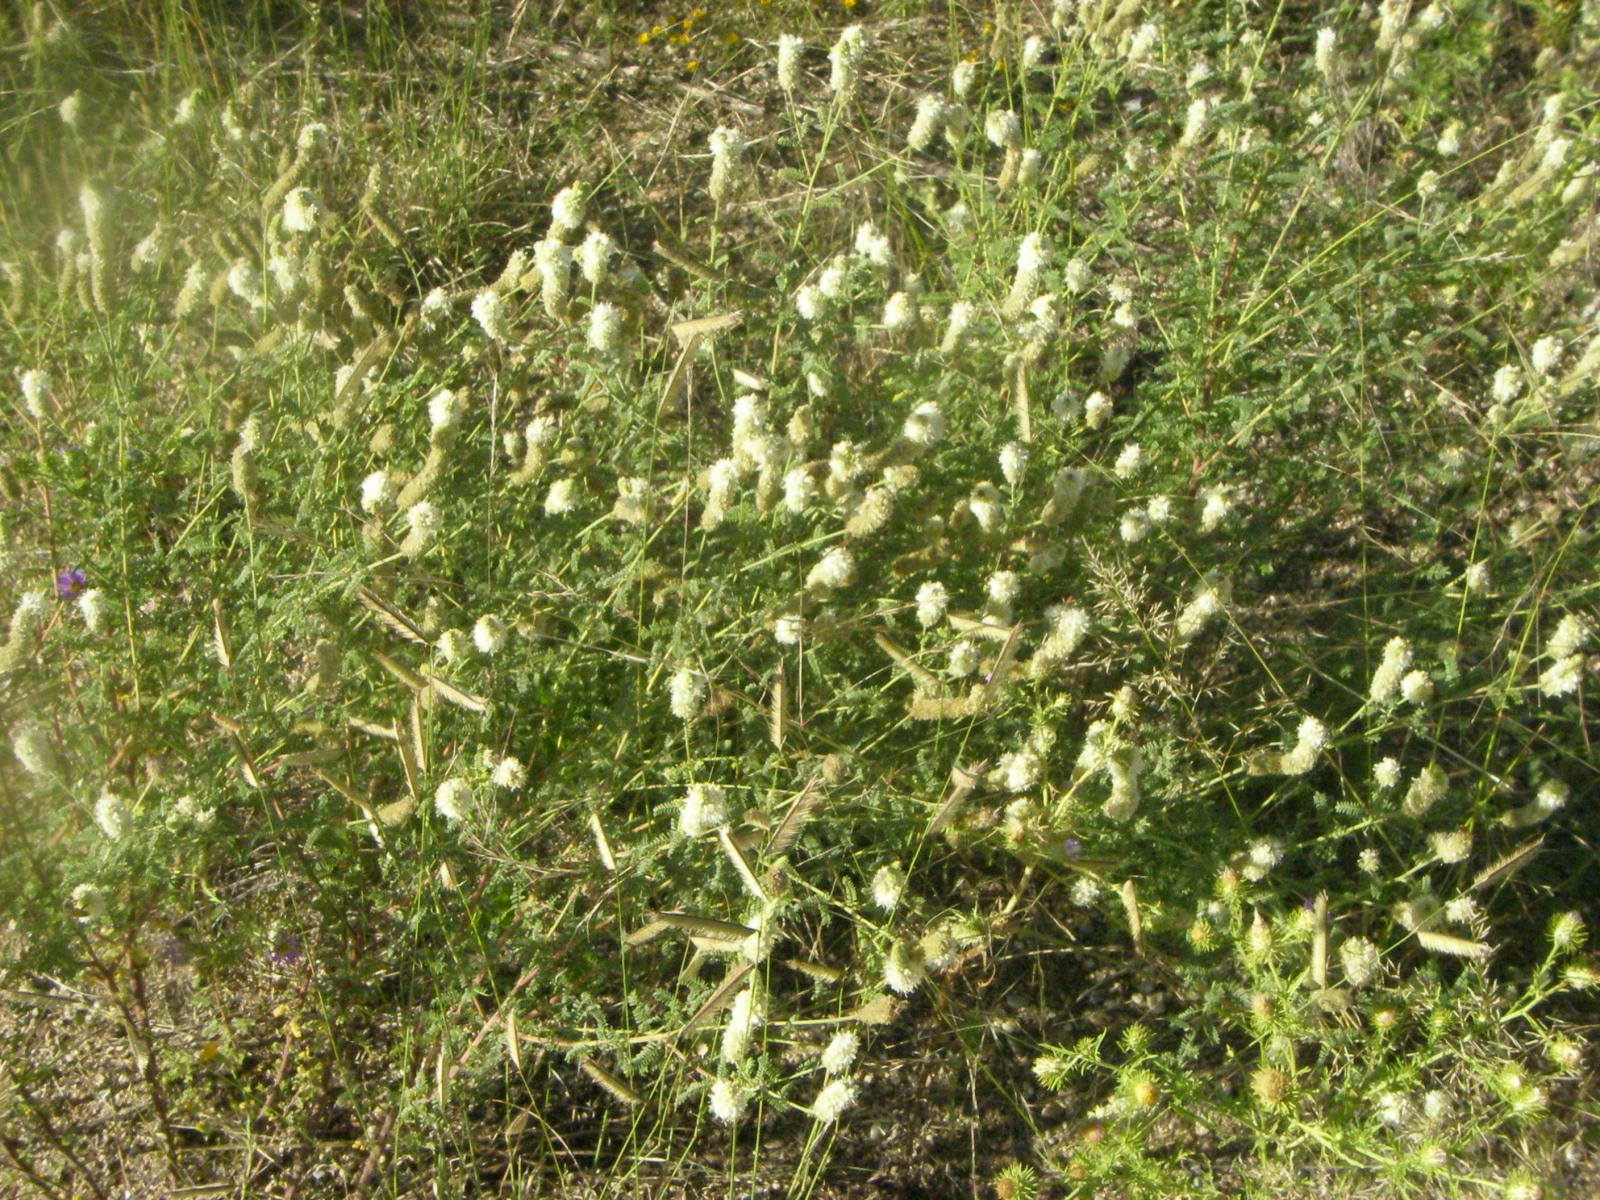 Thornbera albiflora image